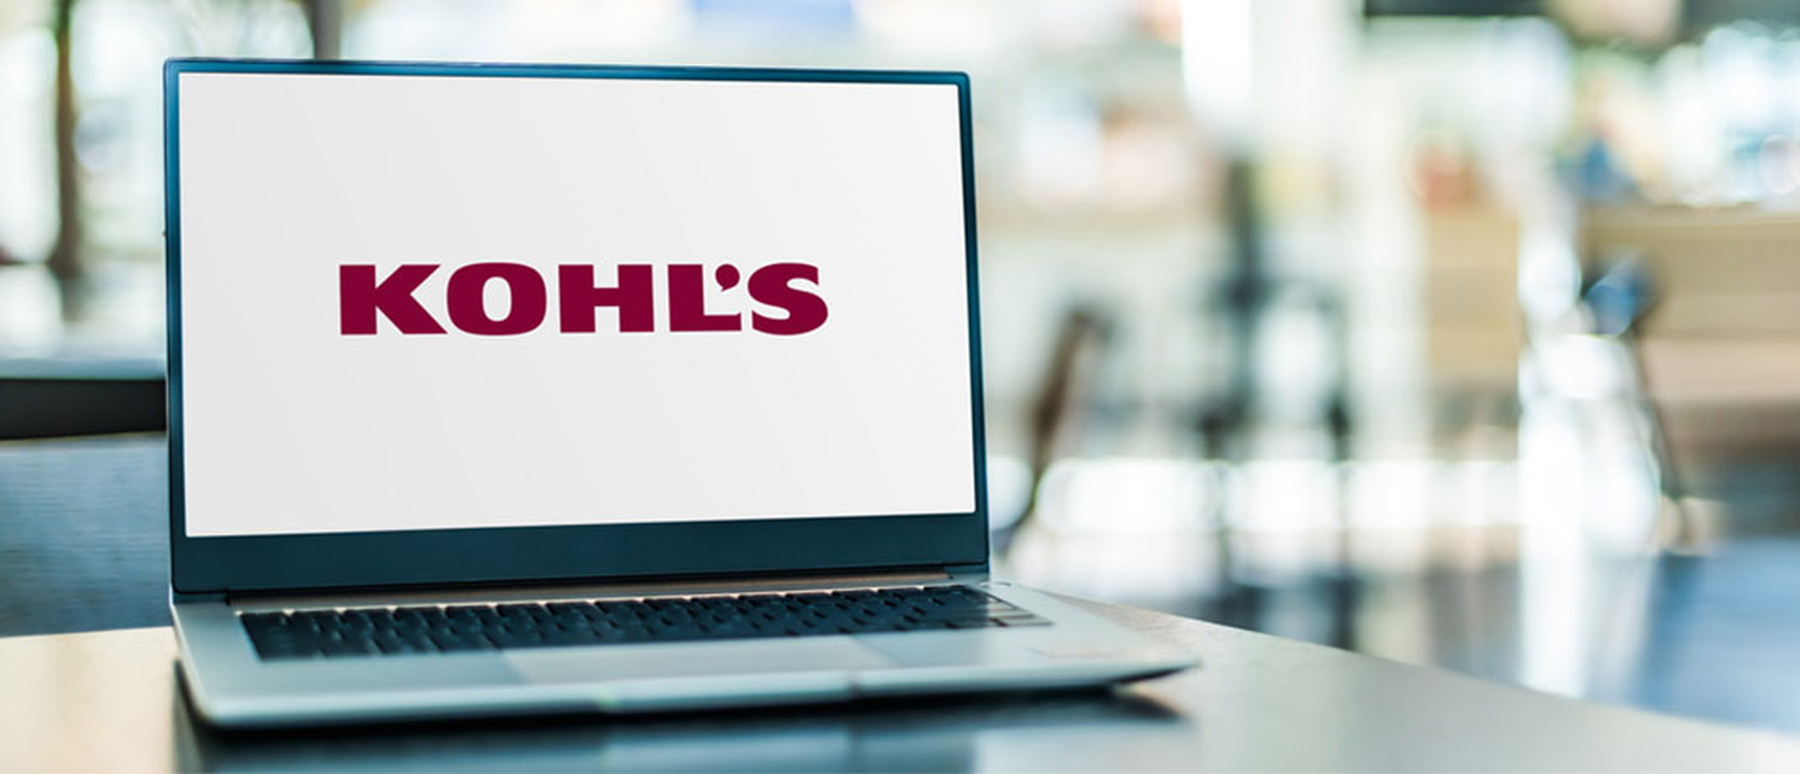 Kohl's logo on a laptop